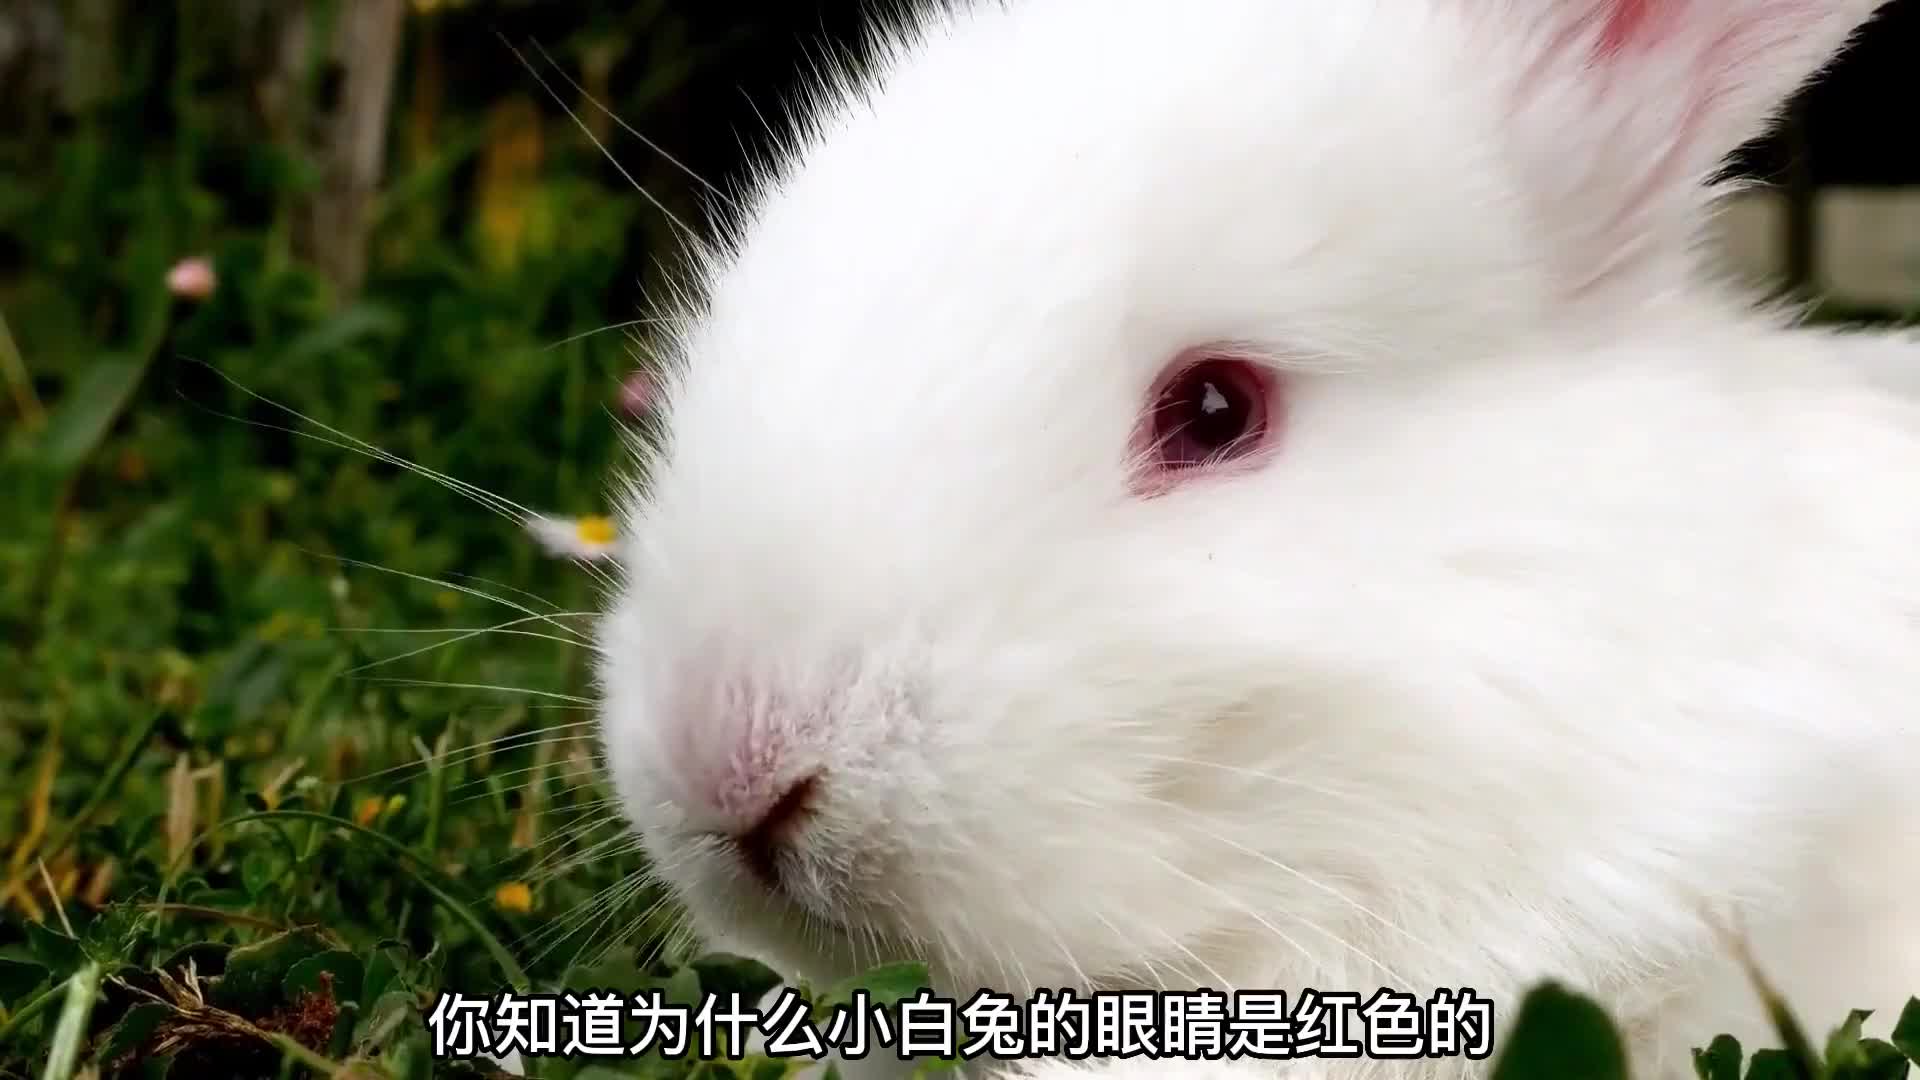 为什么小白兔眼睛是红色的,而其他兔子却是其他颜色?